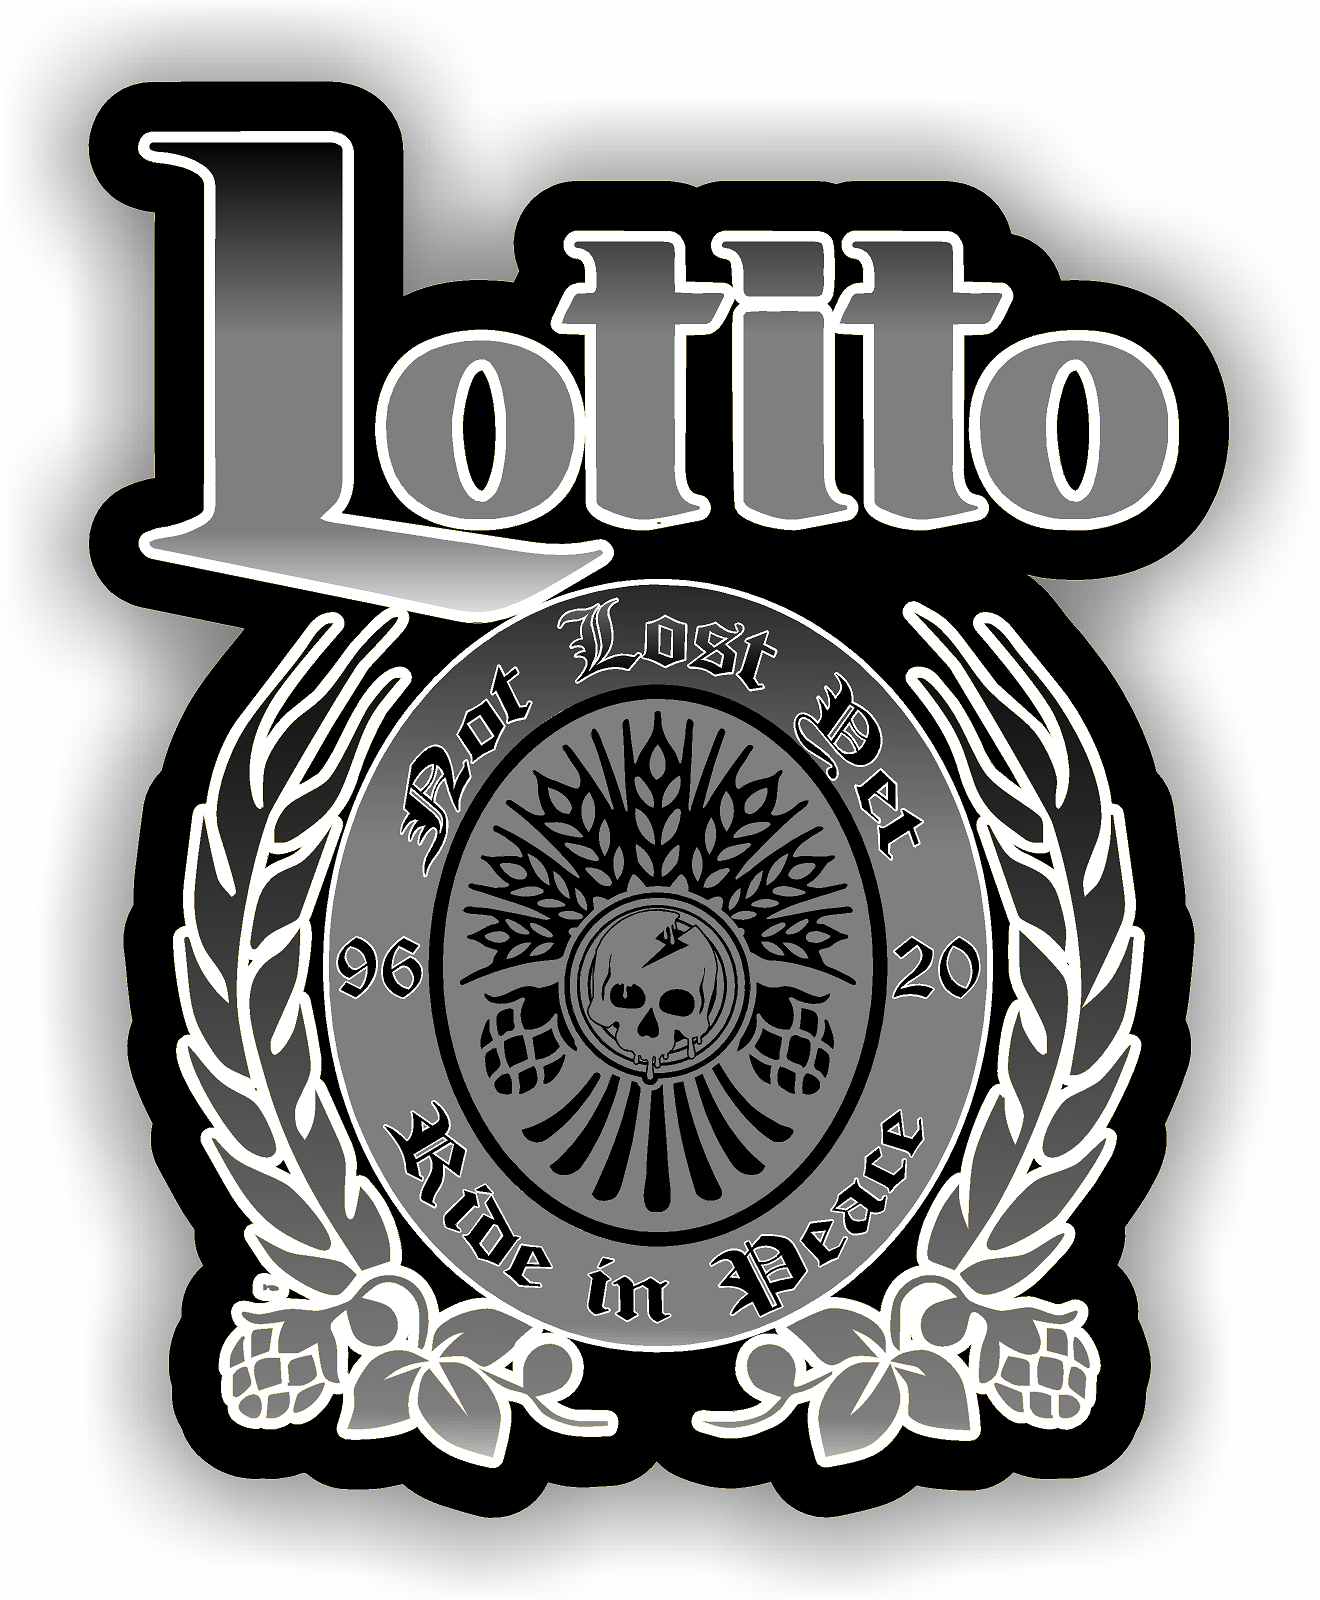 Brian Lotito Memorial Sticker